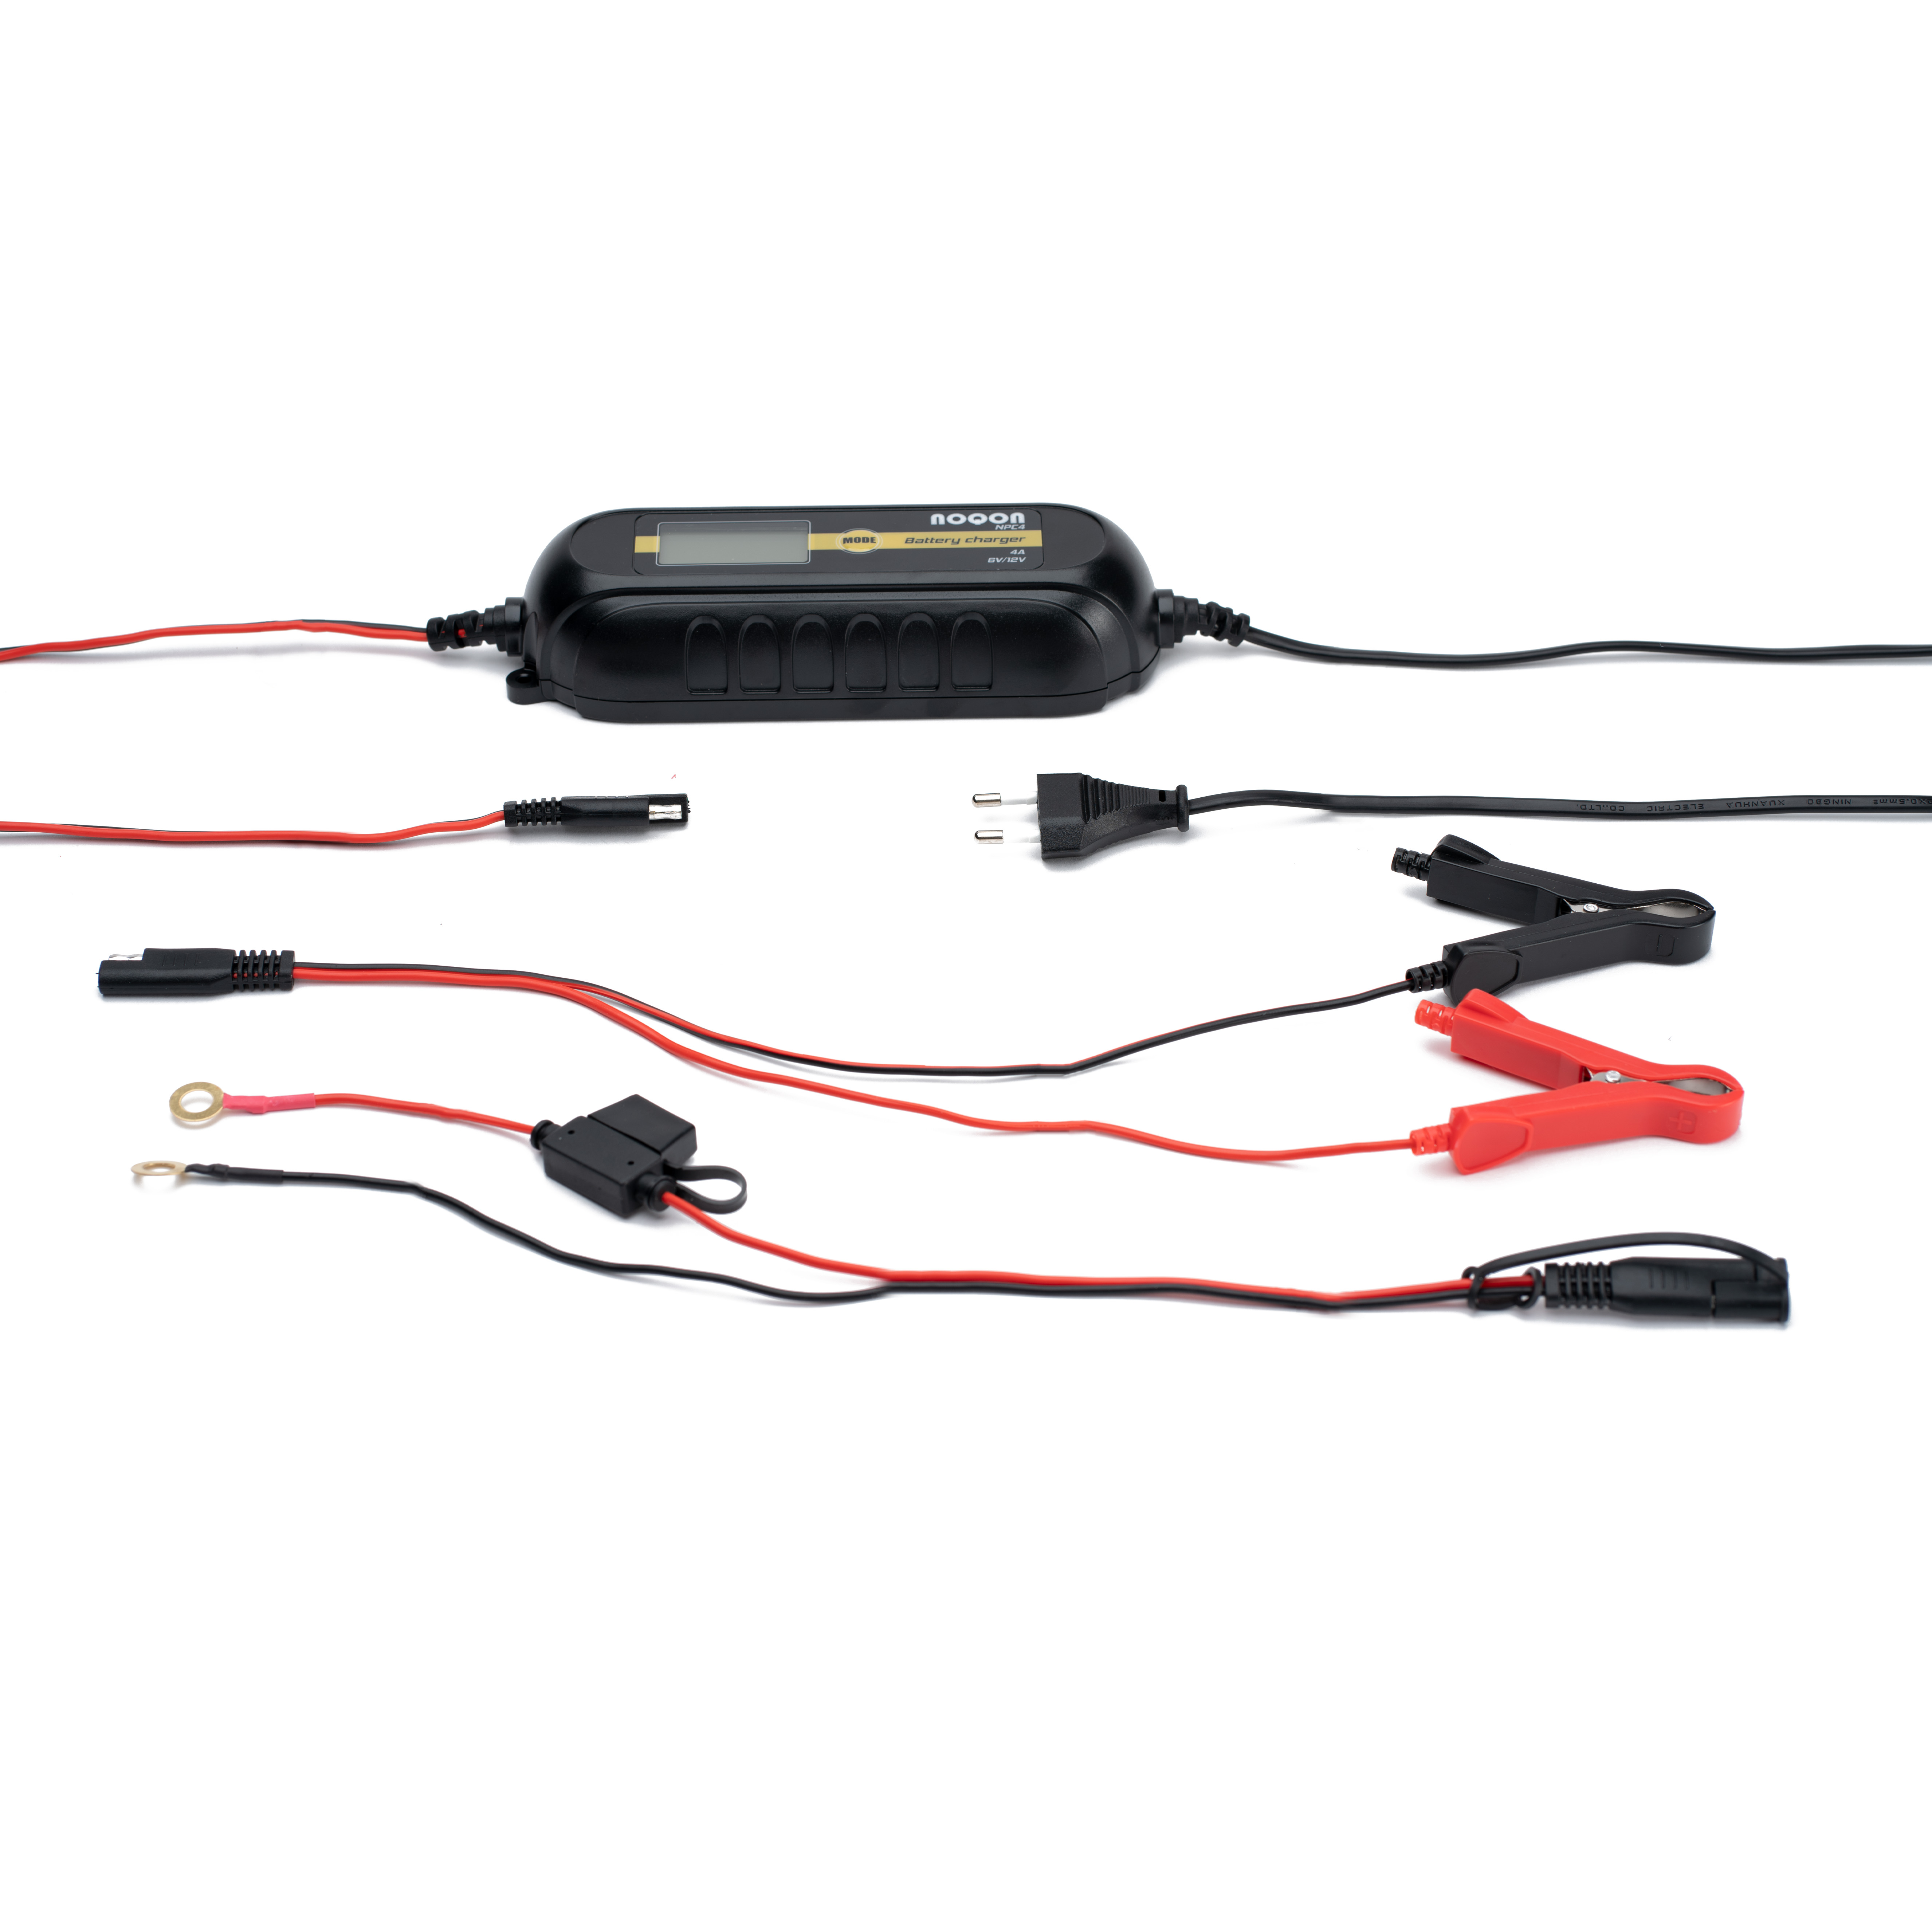 CTEK Comfort Connect M8 Schnellkontaktkabel für Ladegeräte, Ladegeräte, Boot, Batterien für